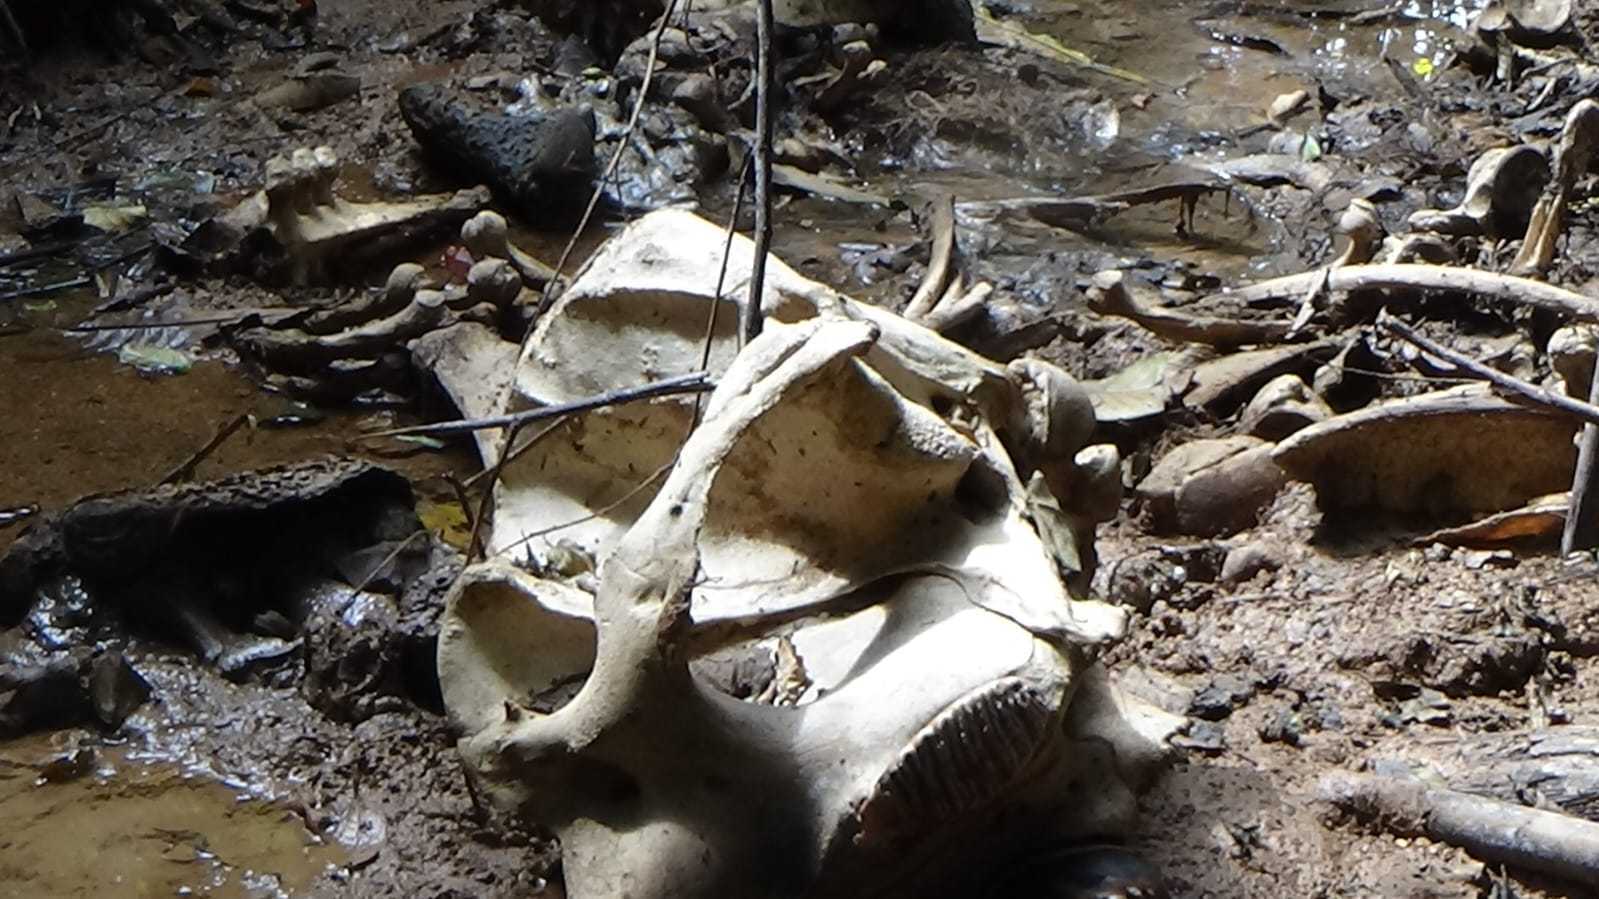 Seekor gajah tersisa tulang belulang ditemukan mati di kawasan Hutan Produksi Air Rami, Rabu (13/9). | Foto: Konsorsium Bentang Alam Seblat